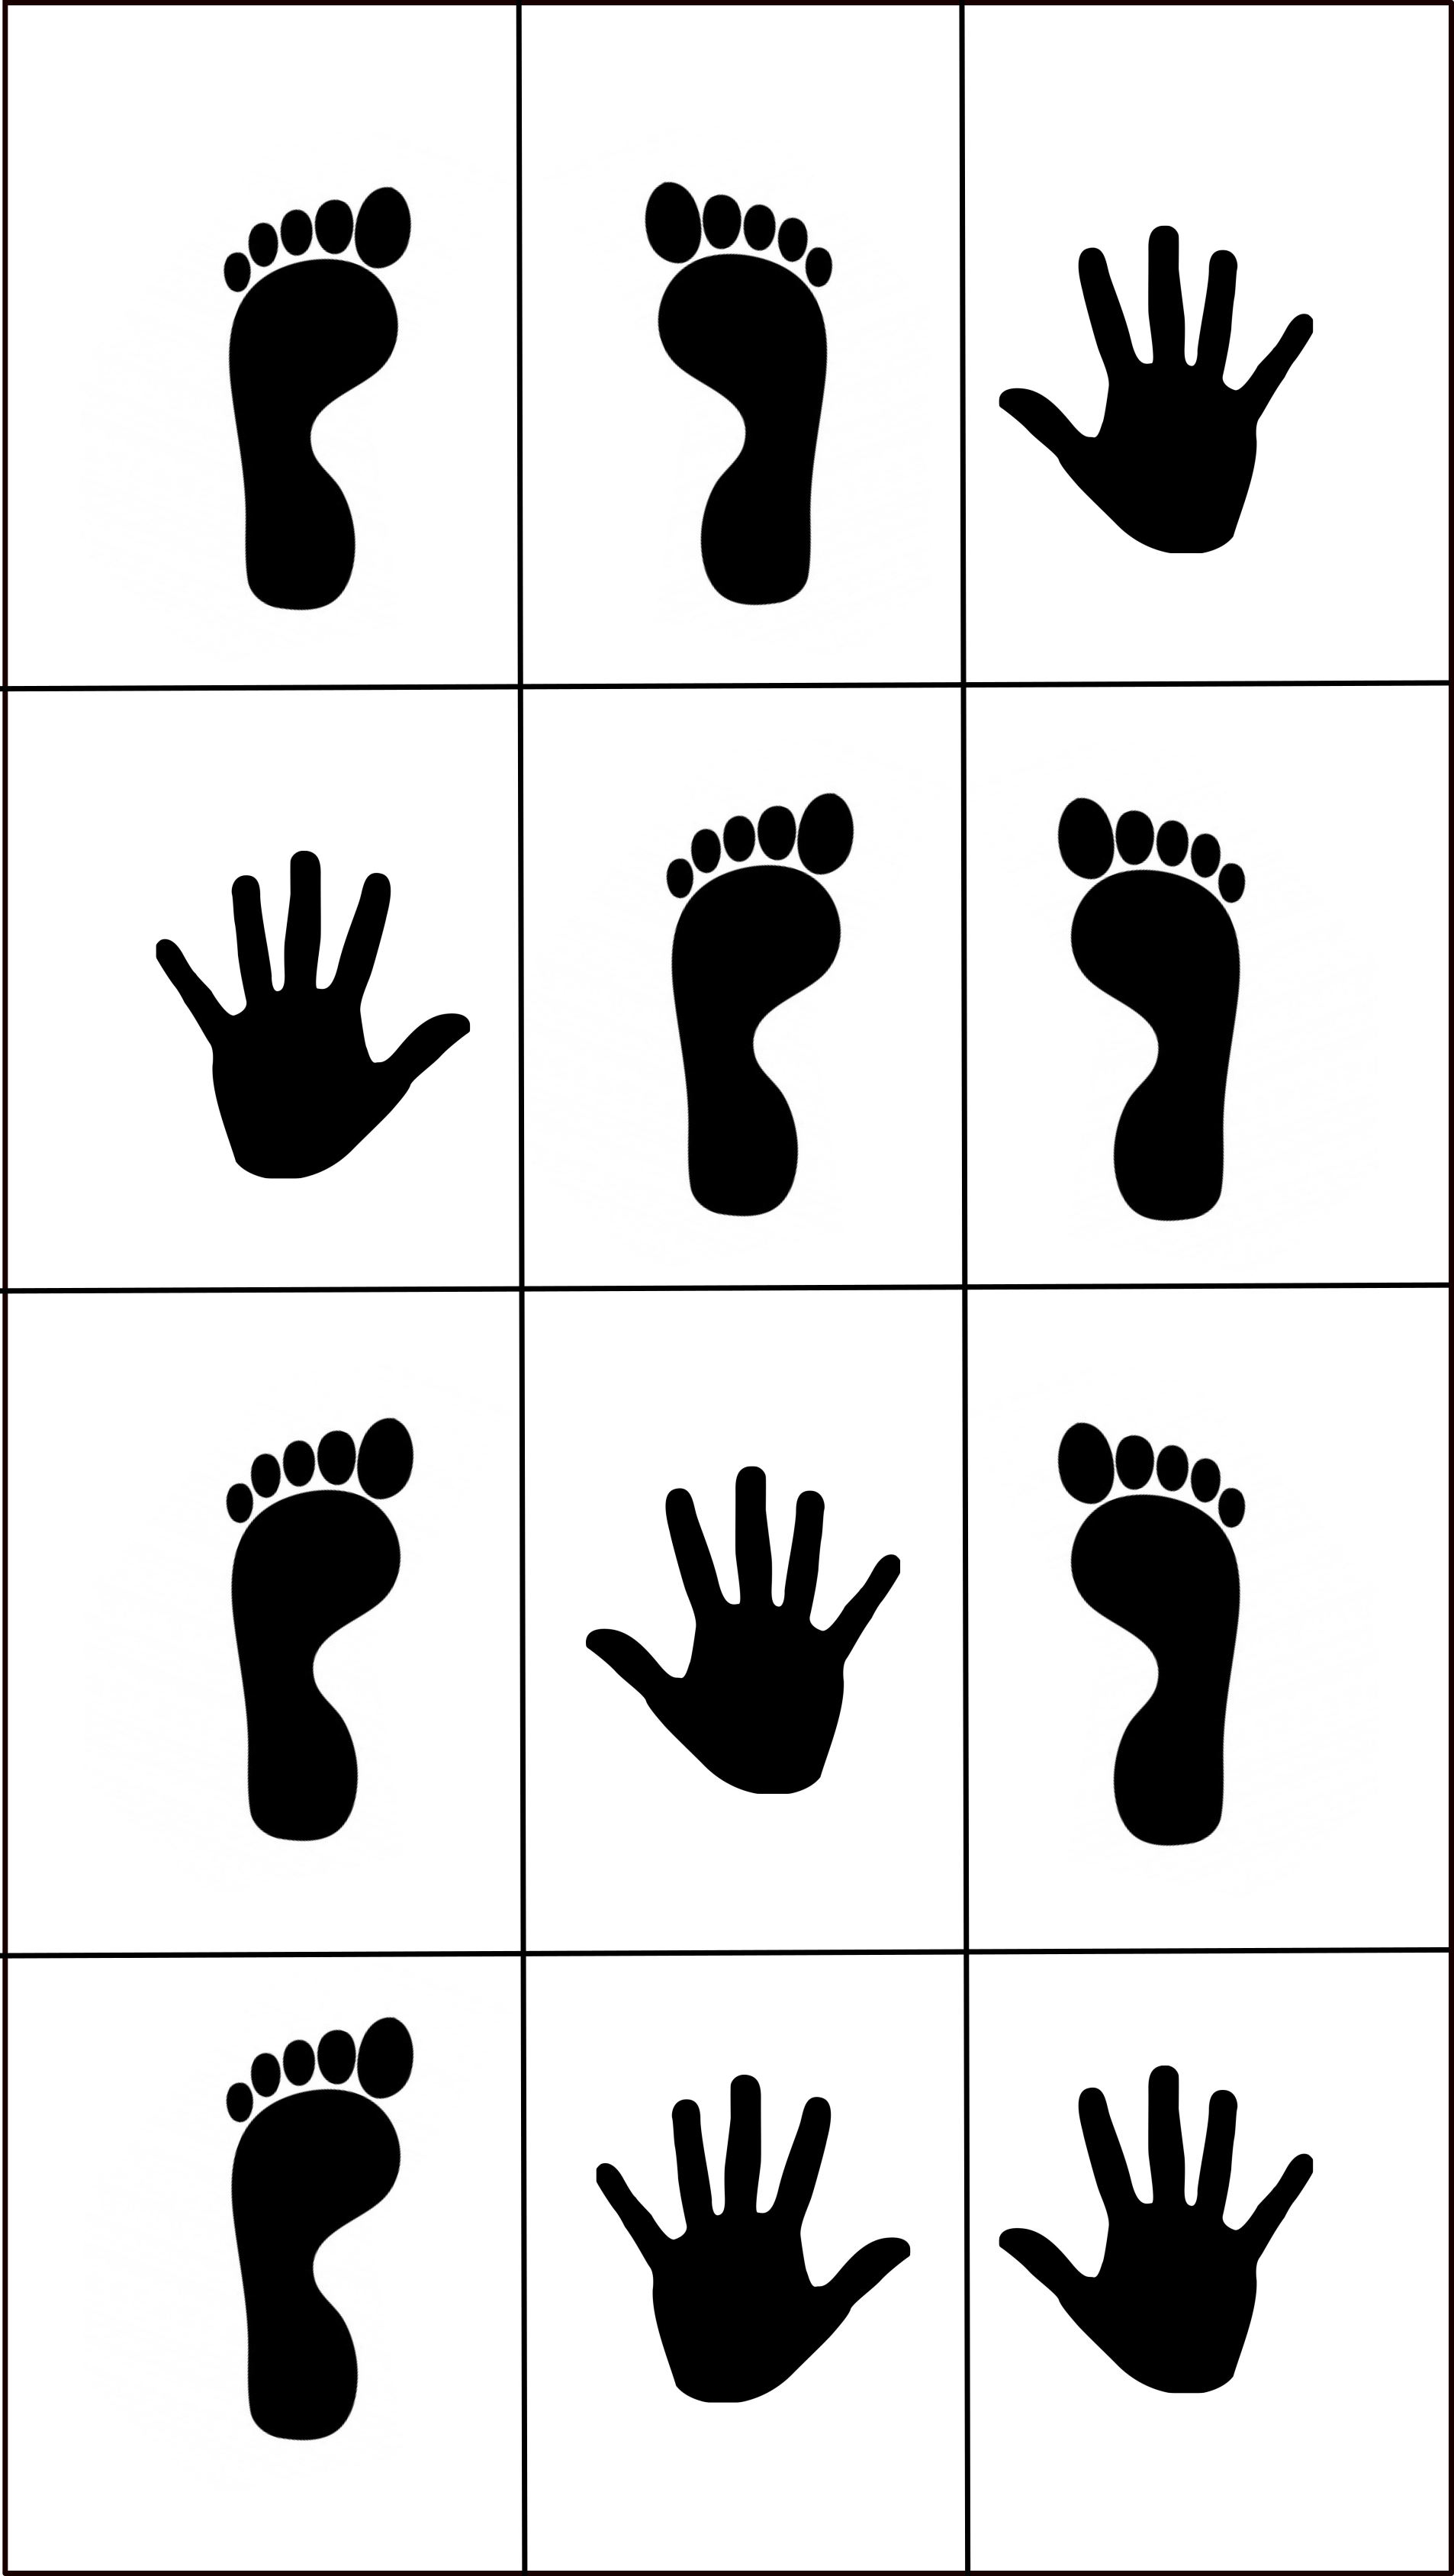 Hands-Feet Jumping Game